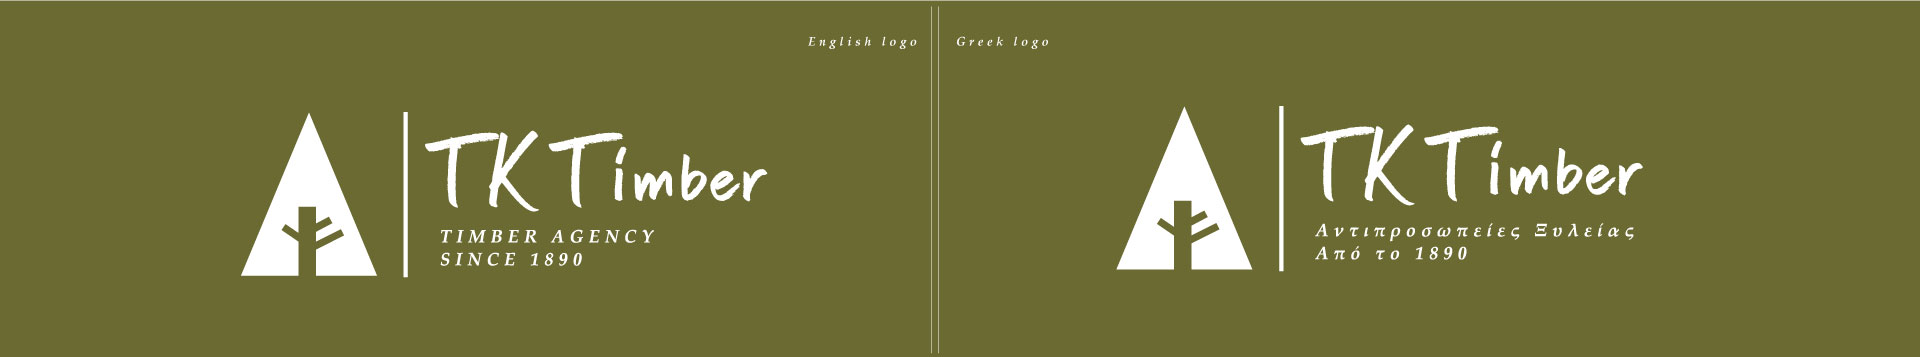 TK Timber logo English & Greek